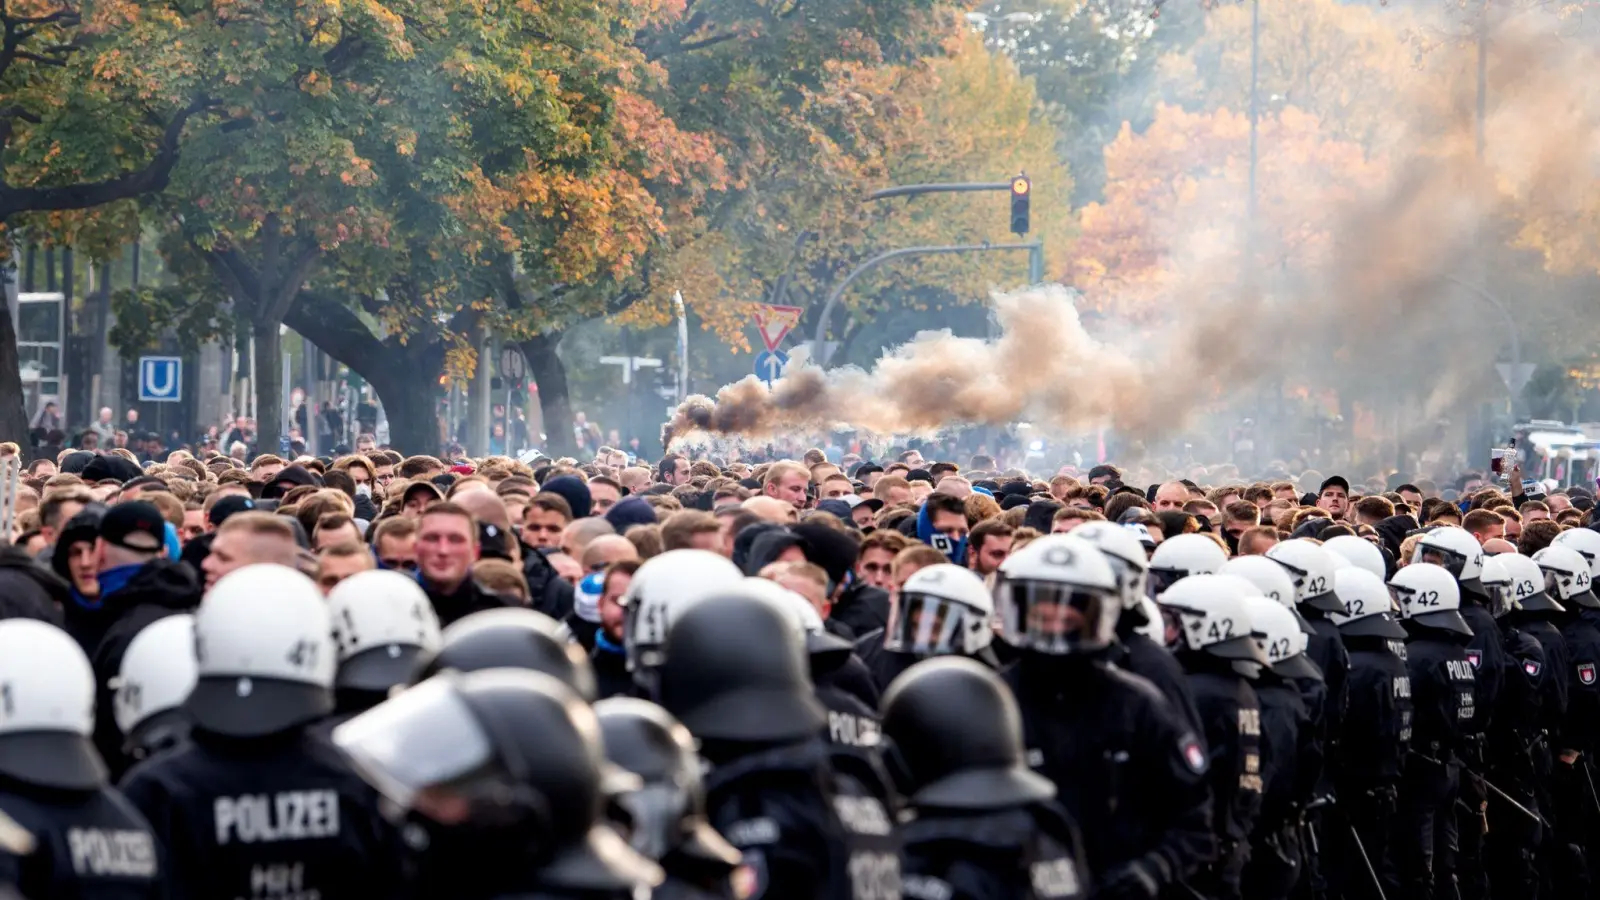 Der DFB hat Fans und Polizei zu einem respektvollen Umgang miteinander aufgerufen. (Foto: Daniel Bockwoldt/dpa)